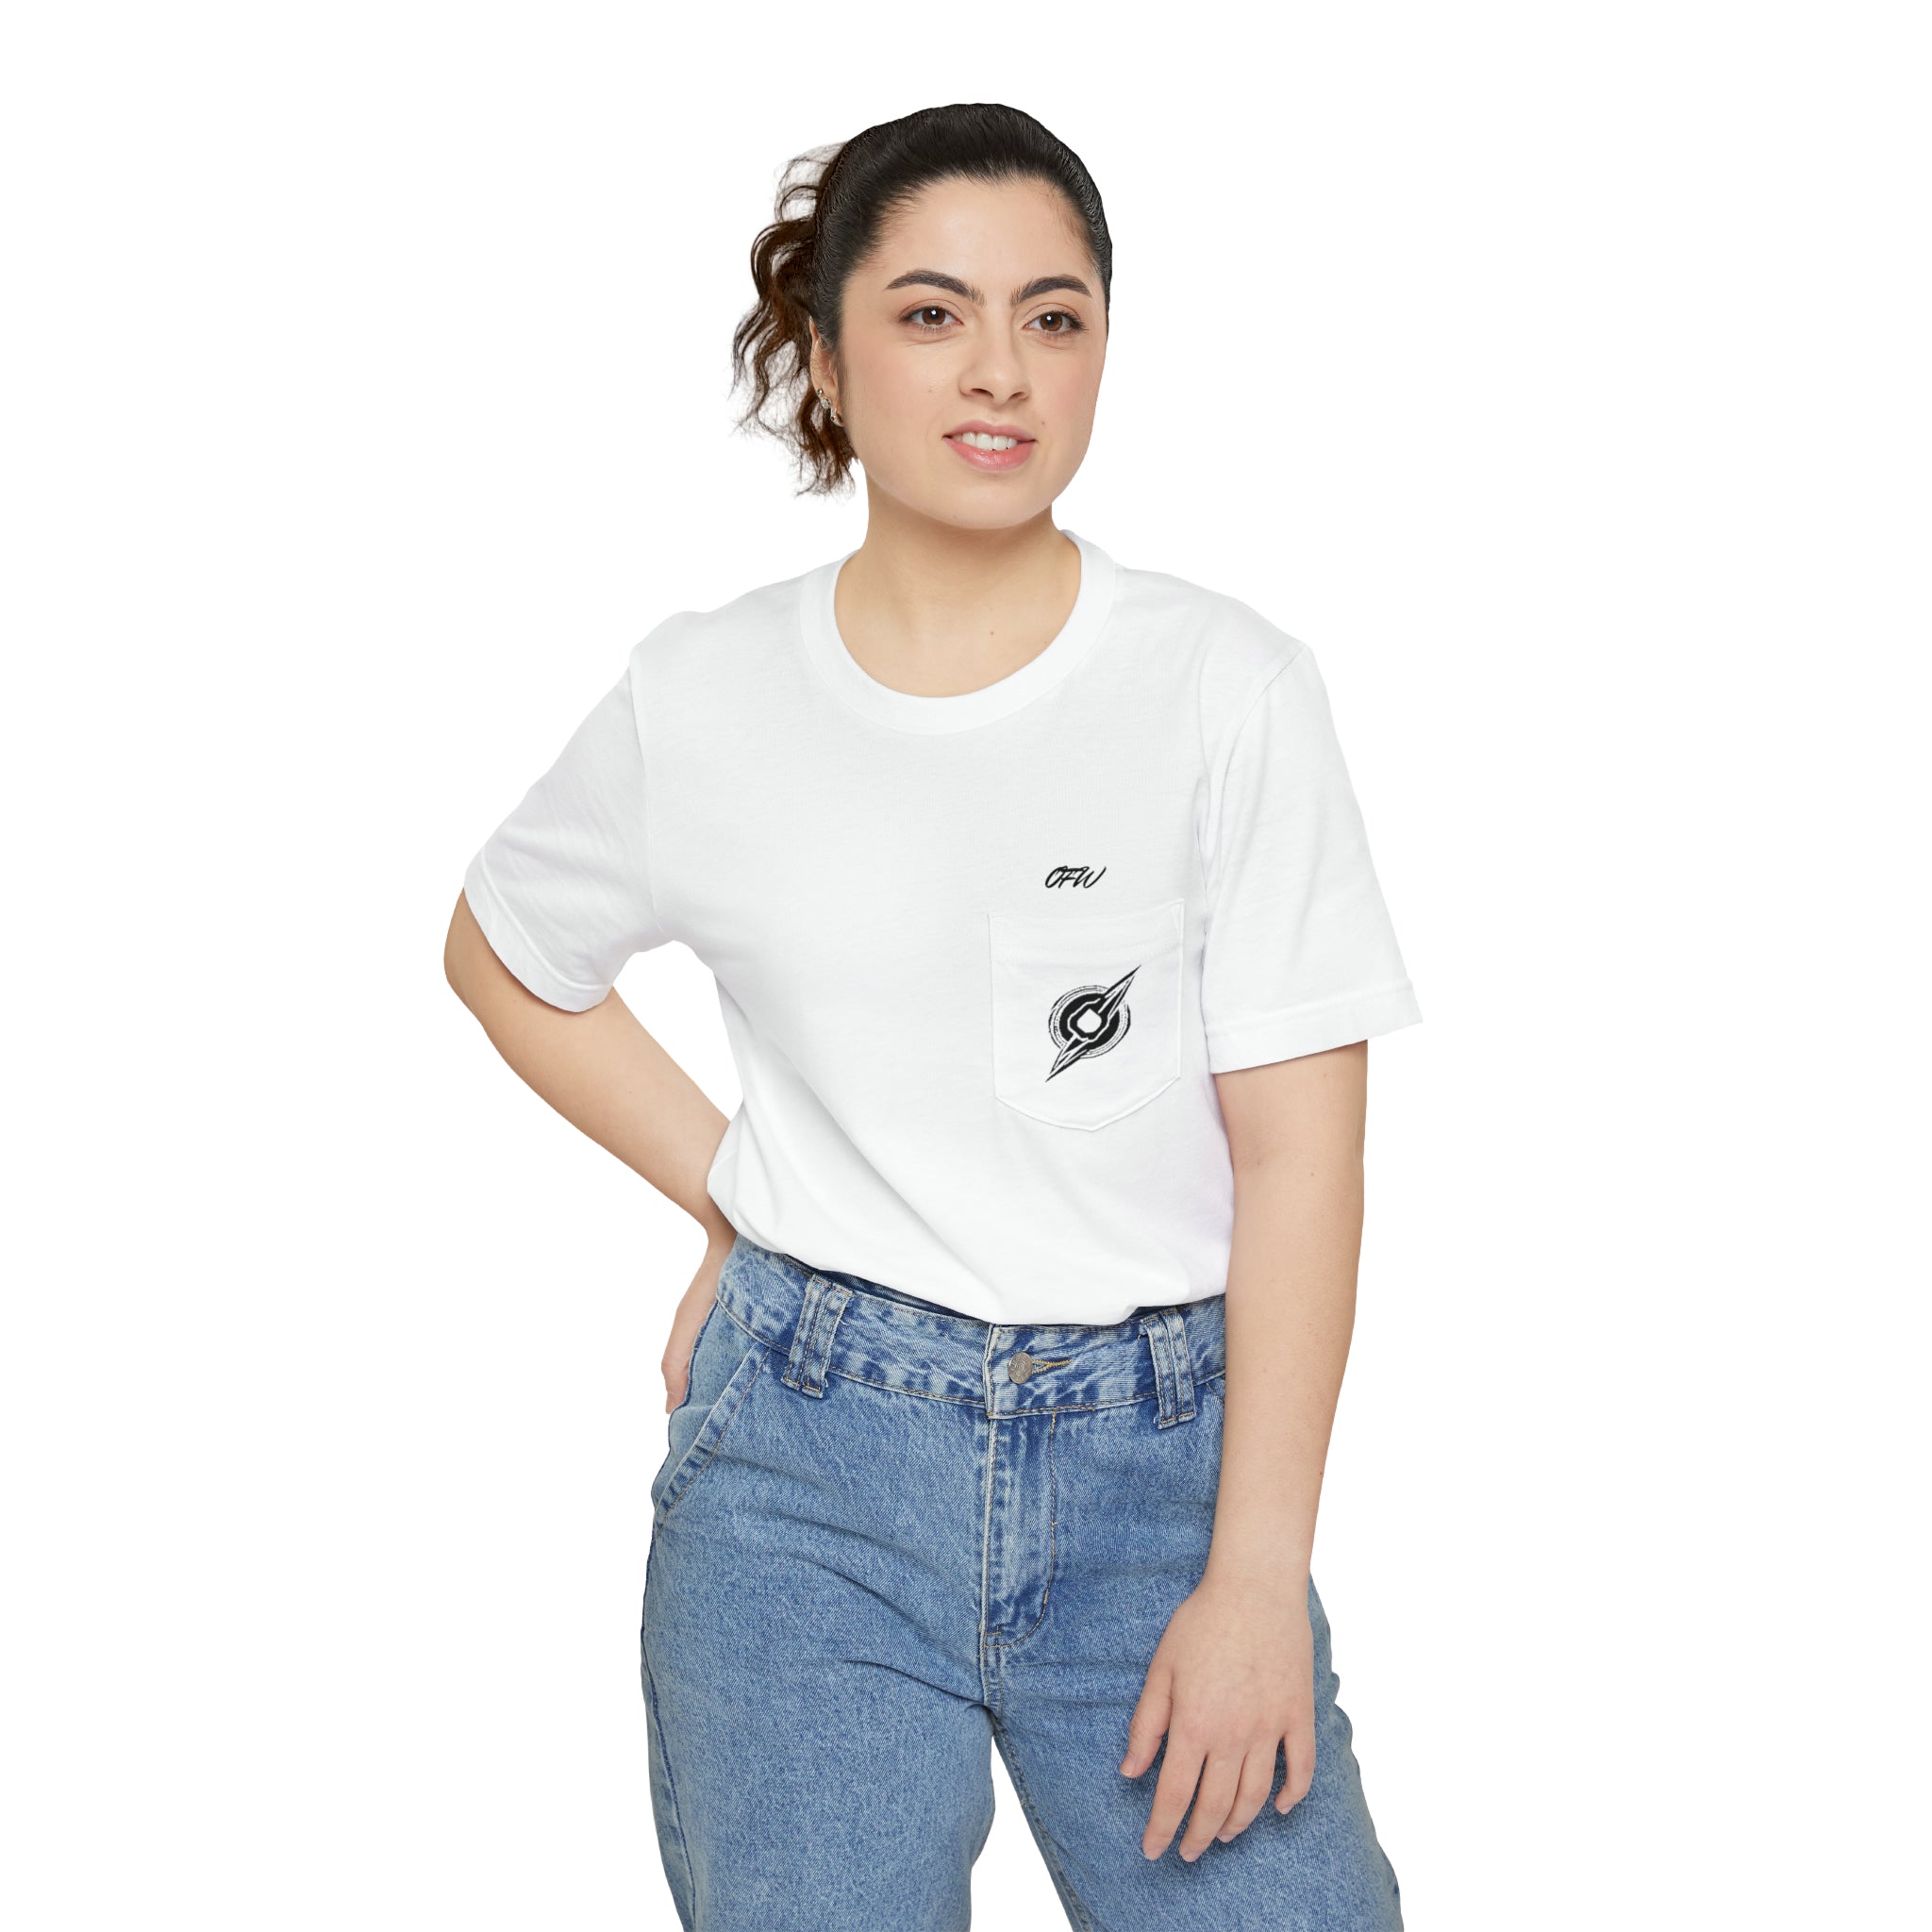 Unisex Black & White OFW Pocket T-shirt